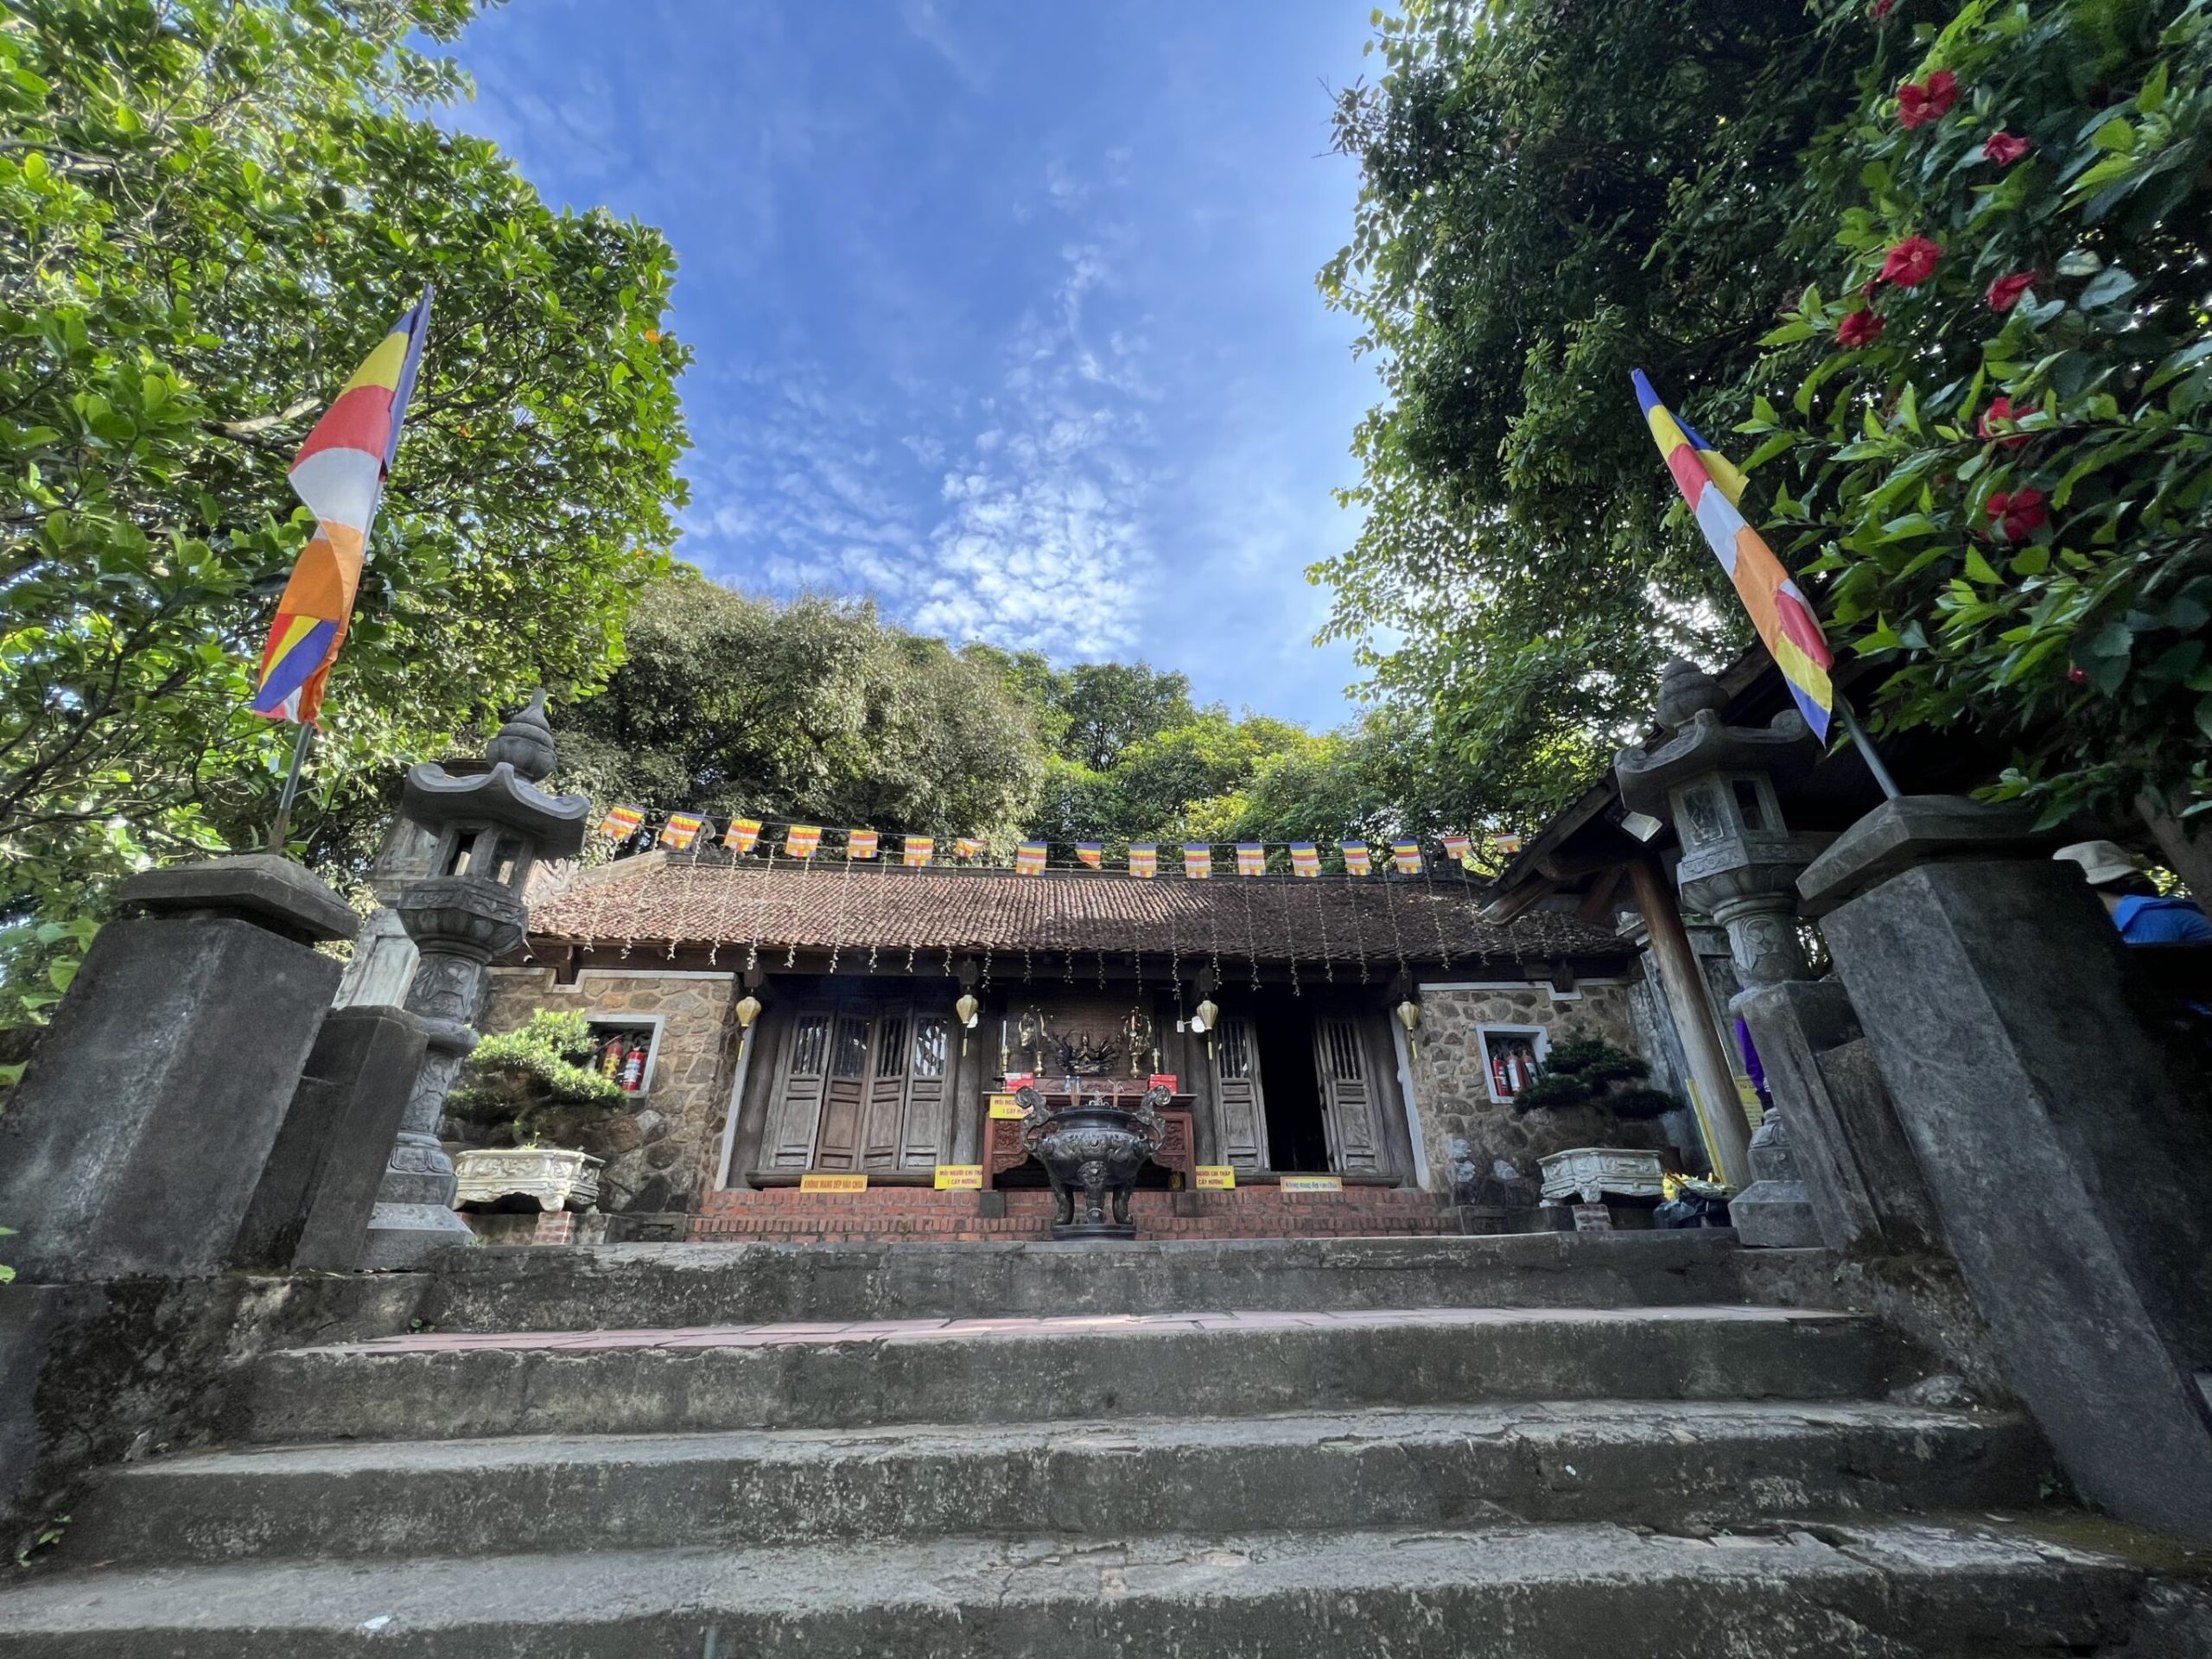 Tour du lịch chùa Hương có rất nhiều mức giá và lựa chọn